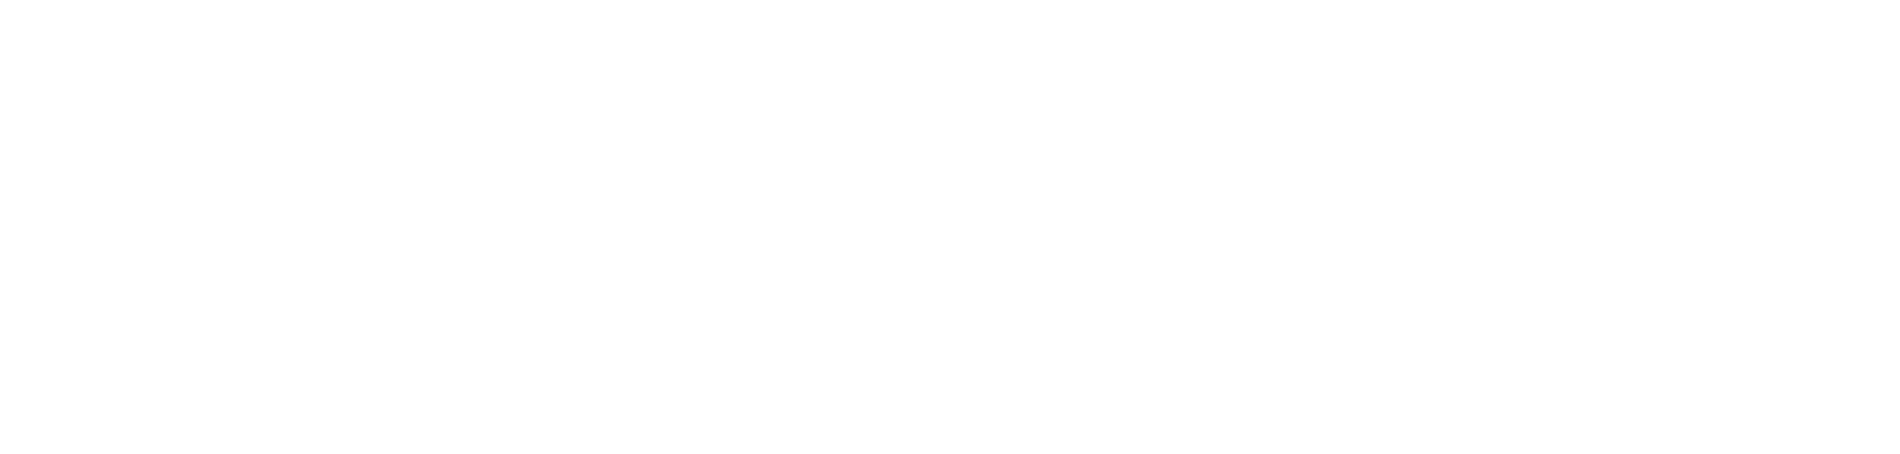 Pimpo.Link